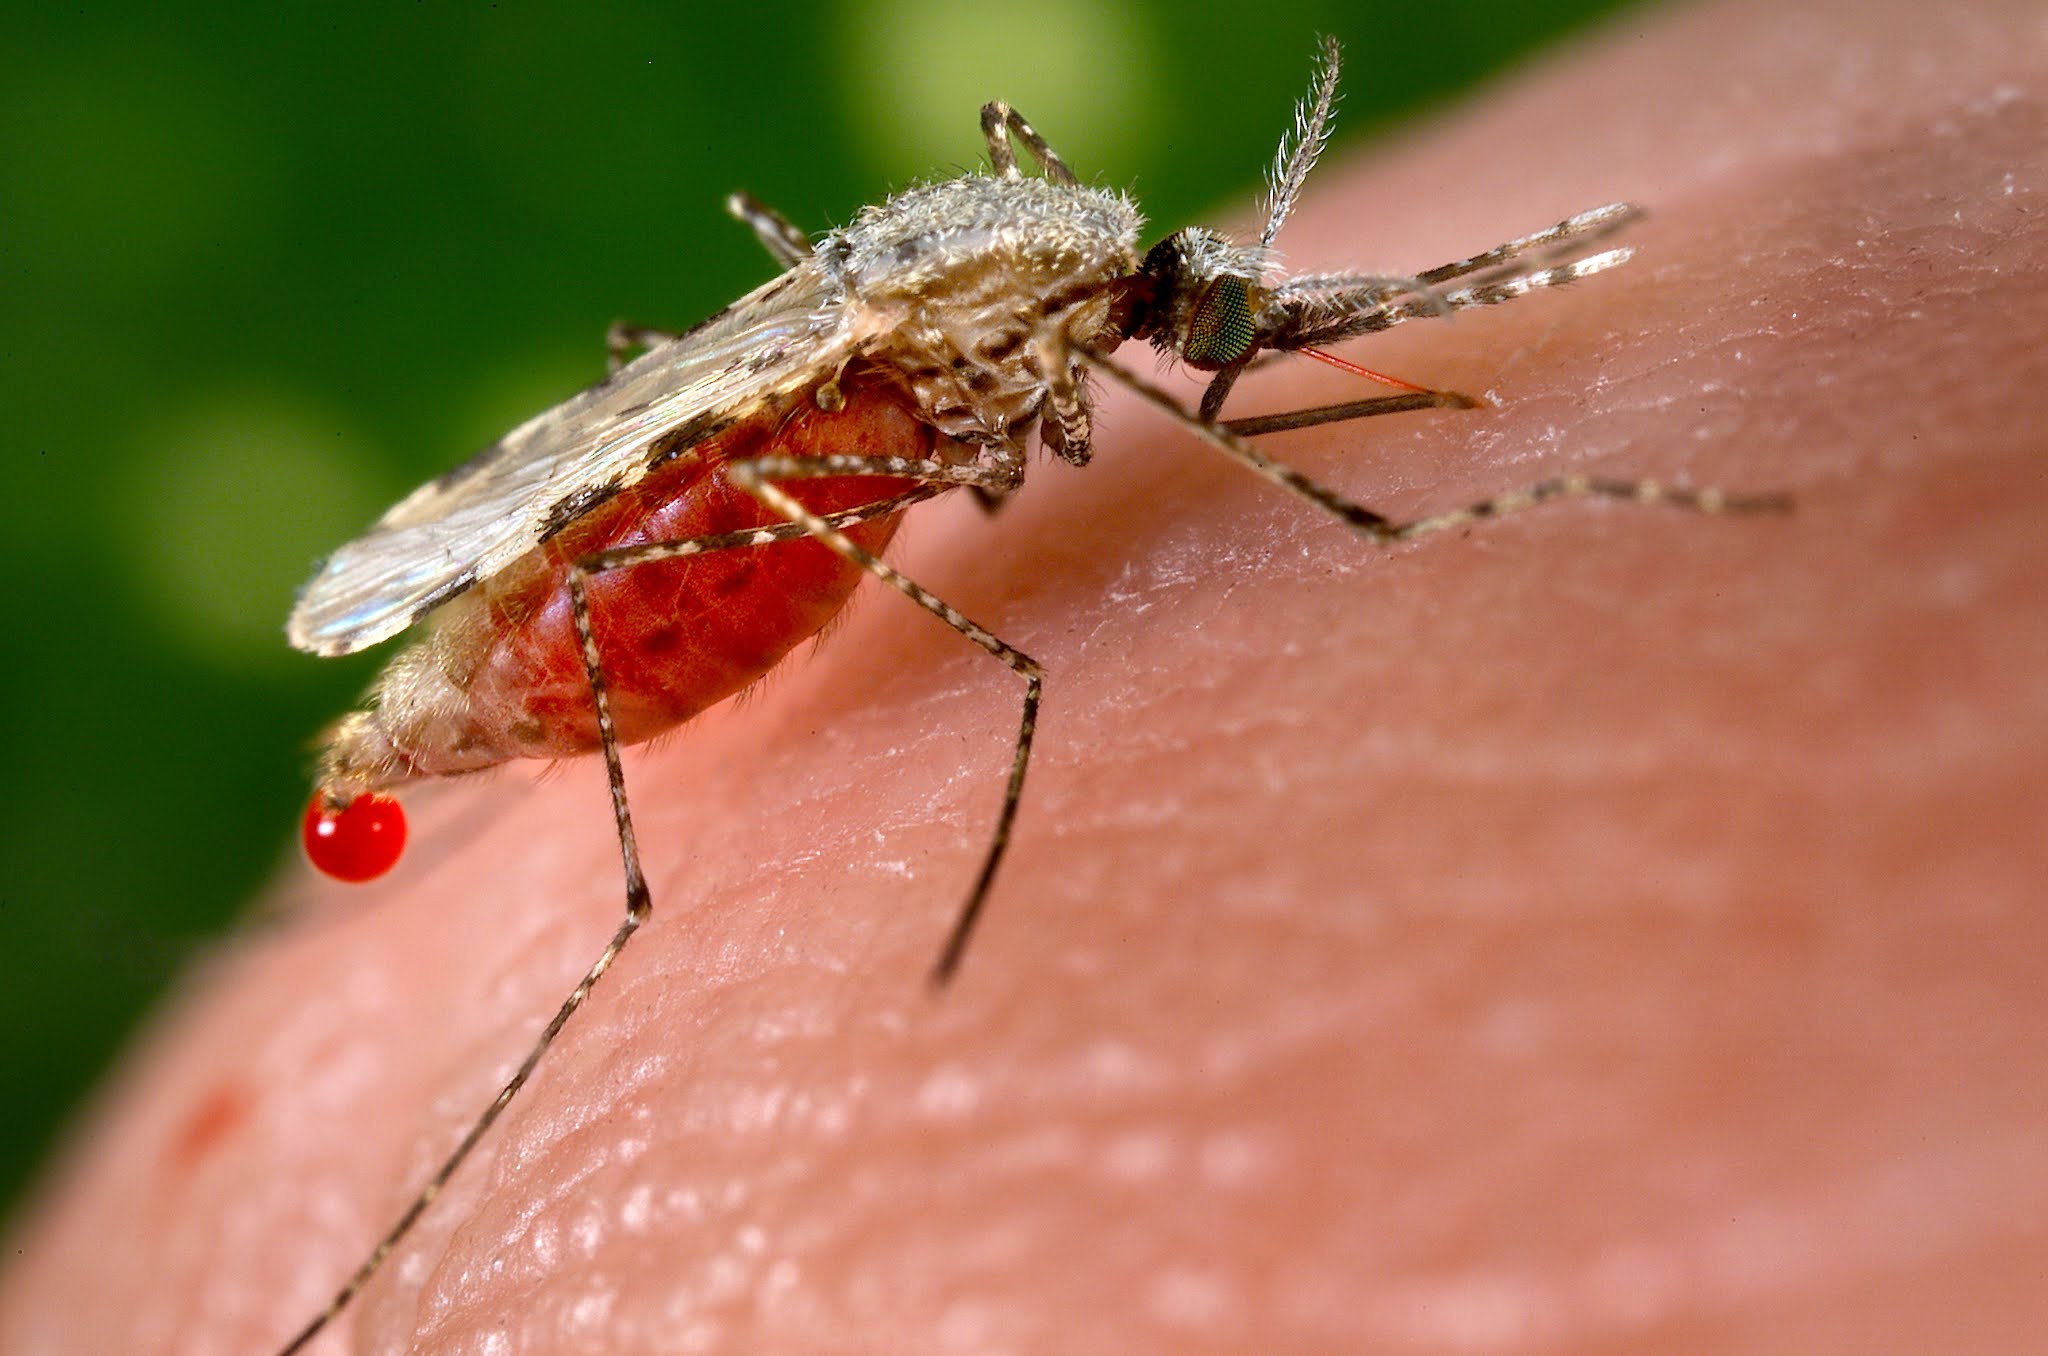 malaria prevention